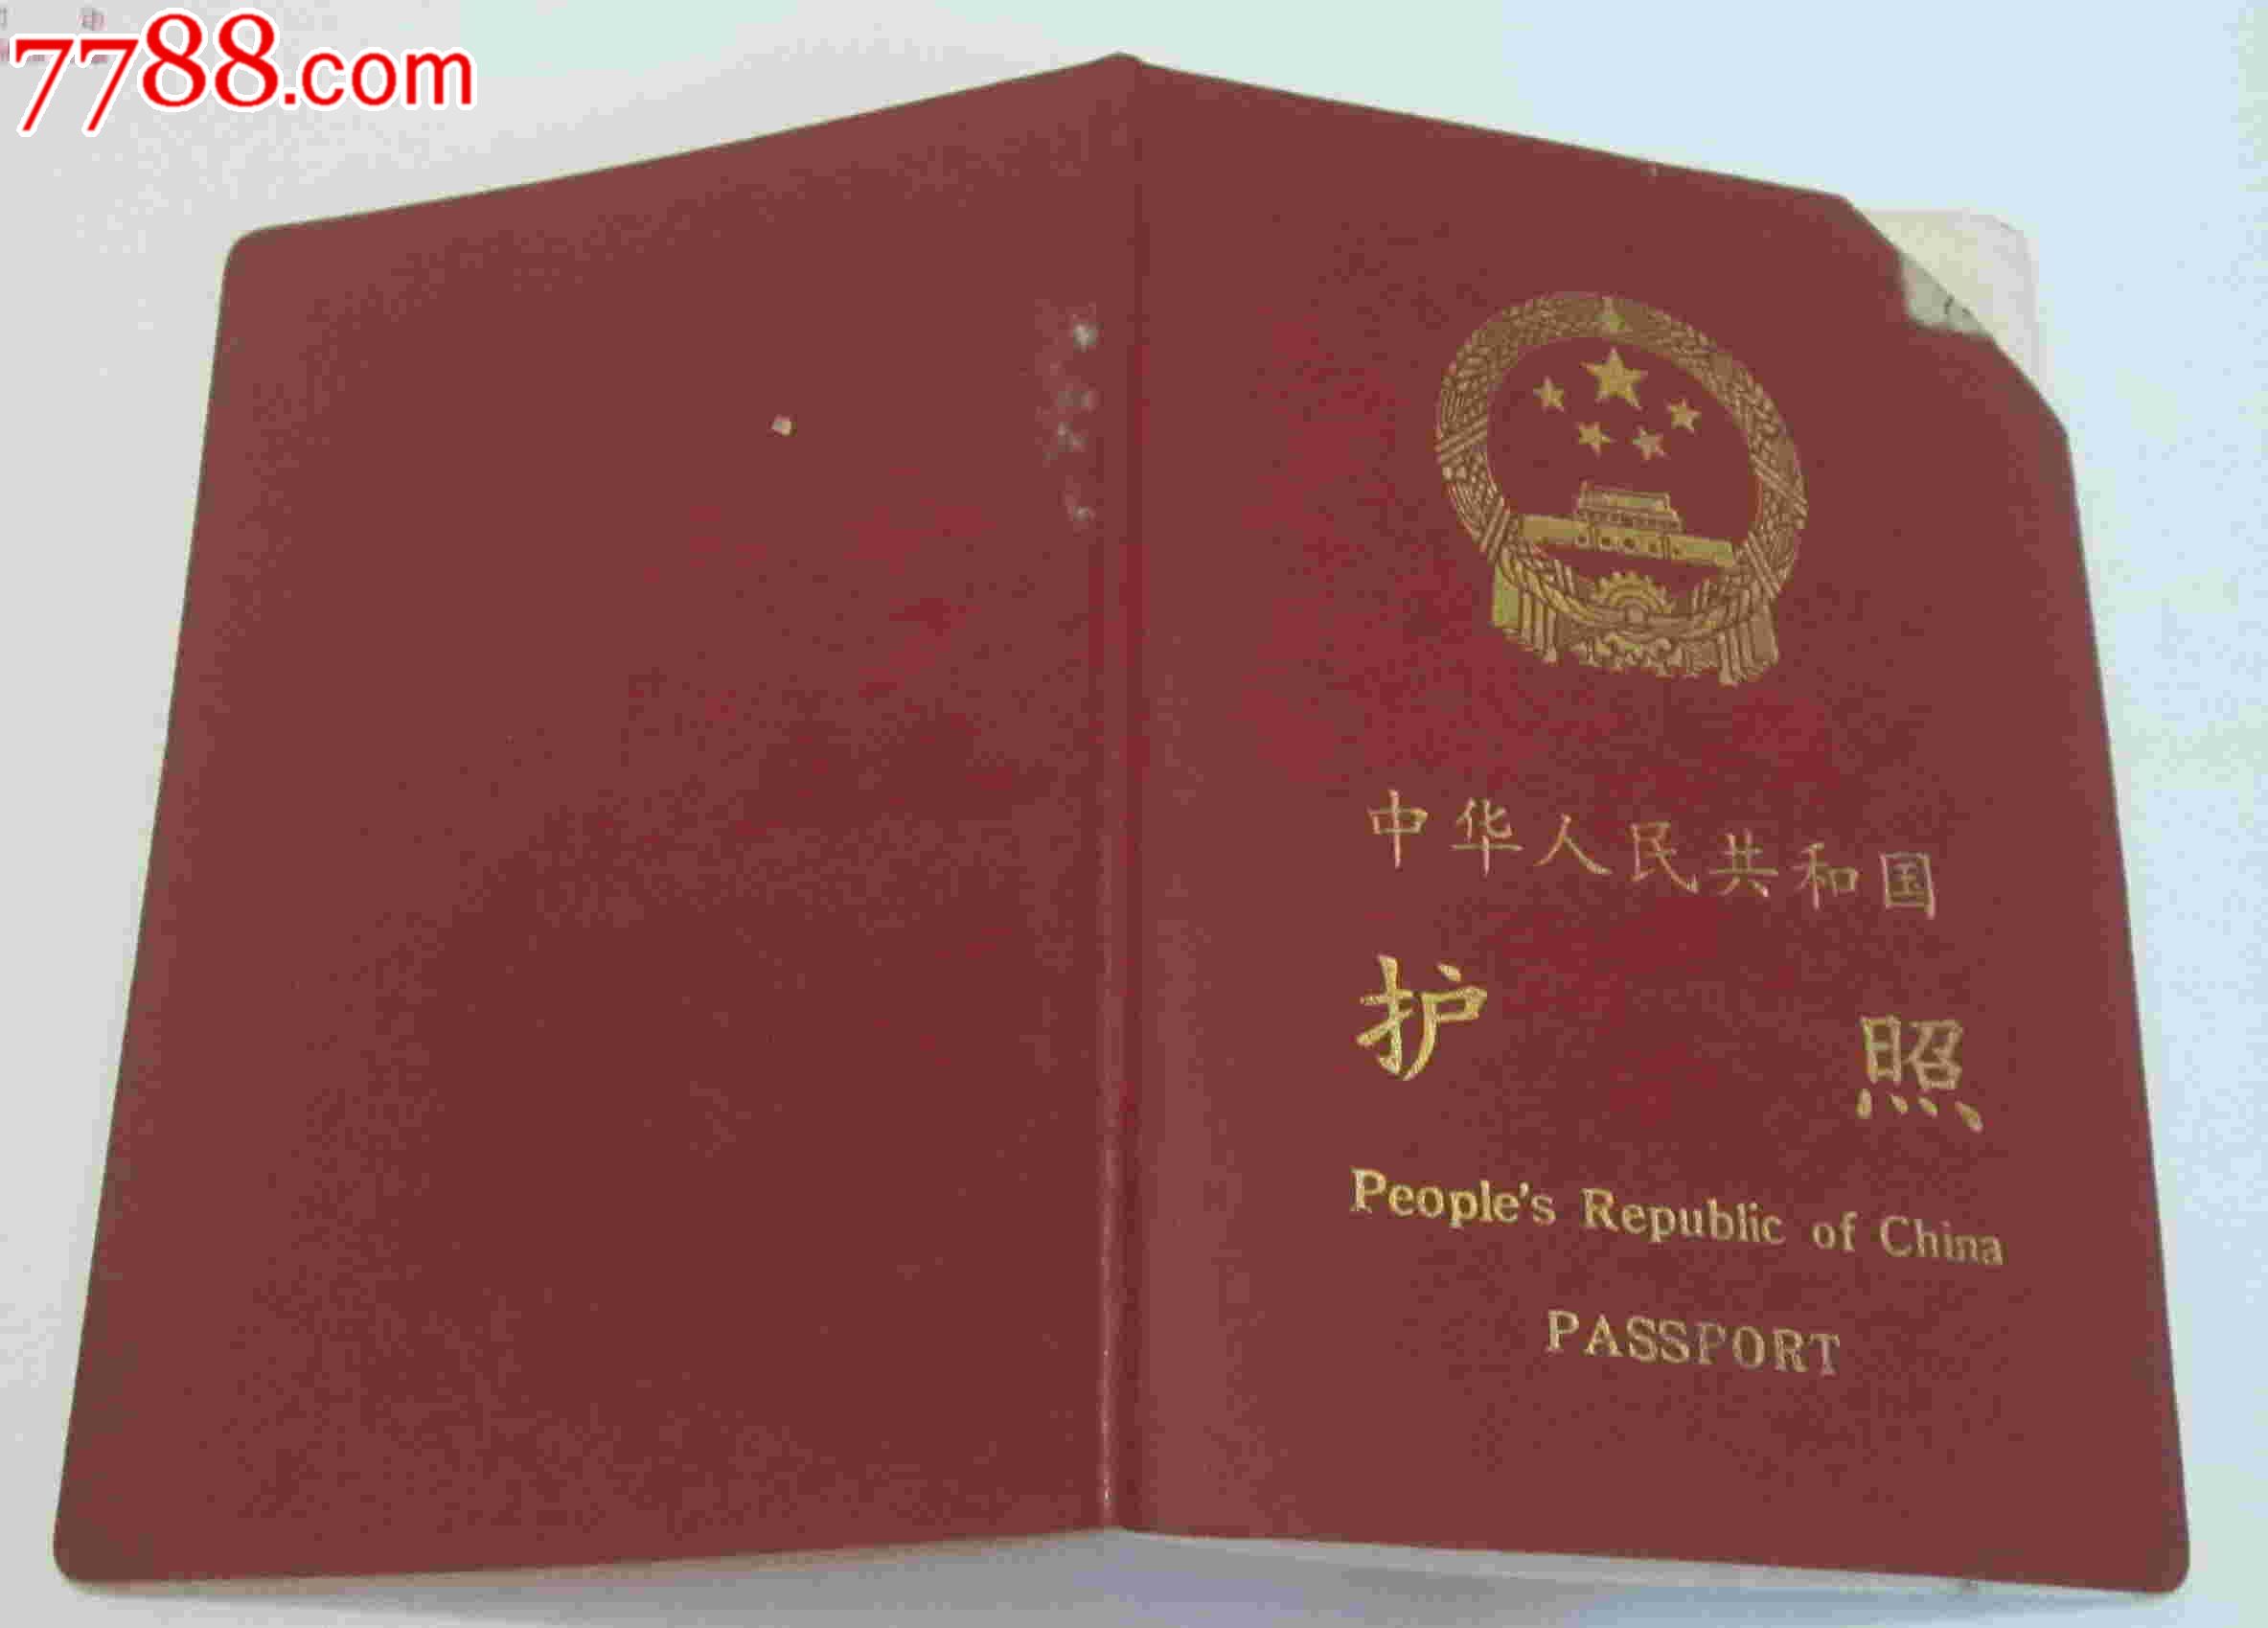 中华人民共和国护照-价格:15.0000元-se18402